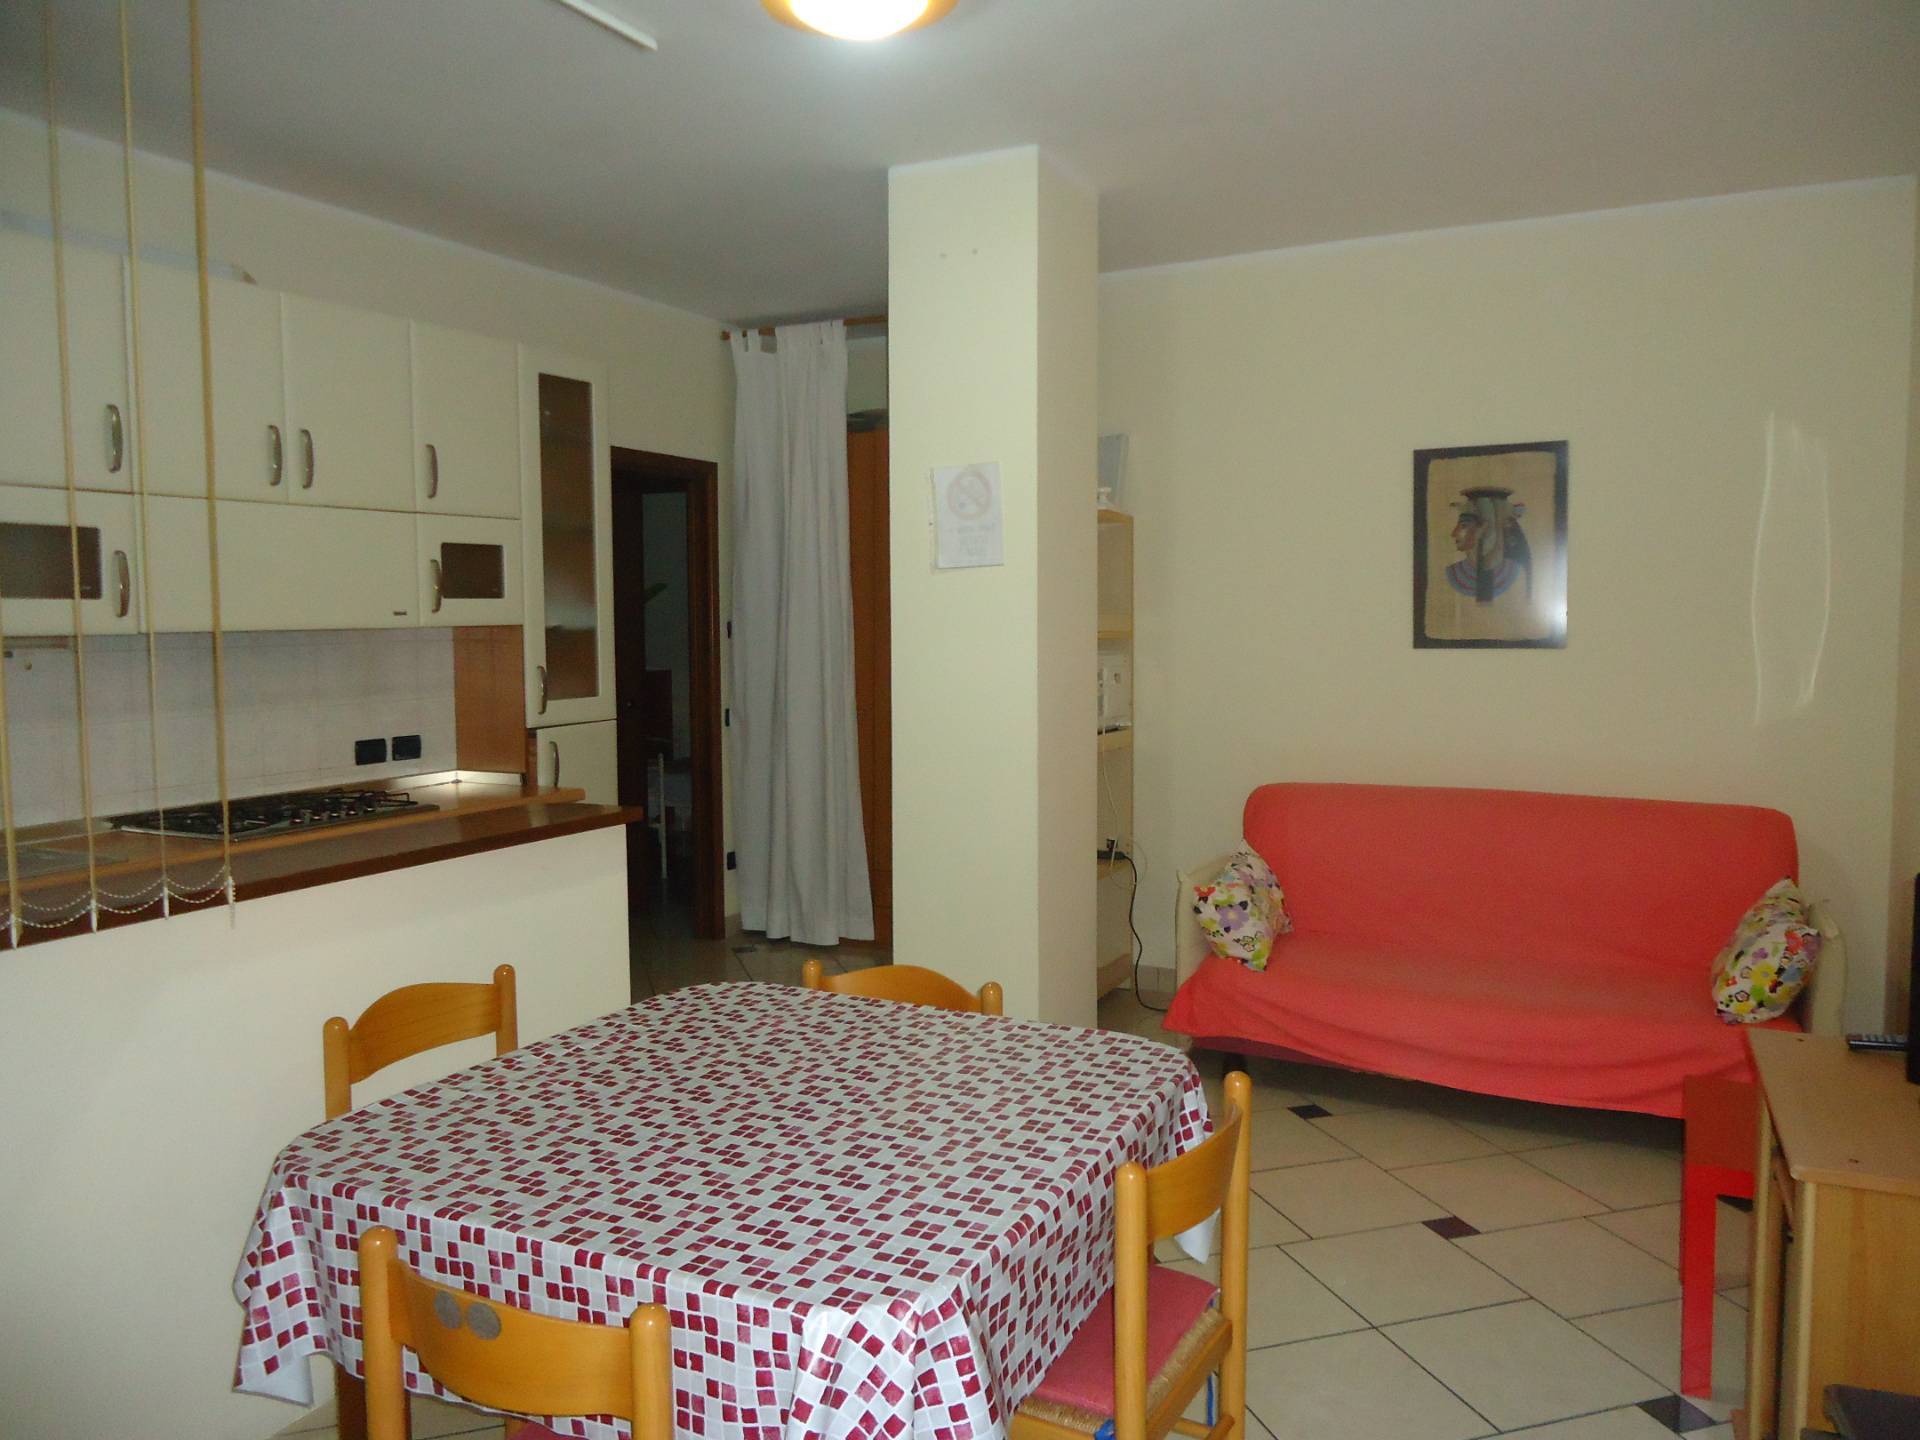 Appartamento in affitto a Bellaria Igea Marina, 4 locali, zona Zona: Bellaria, prezzo € 700 | CambioCasa.it